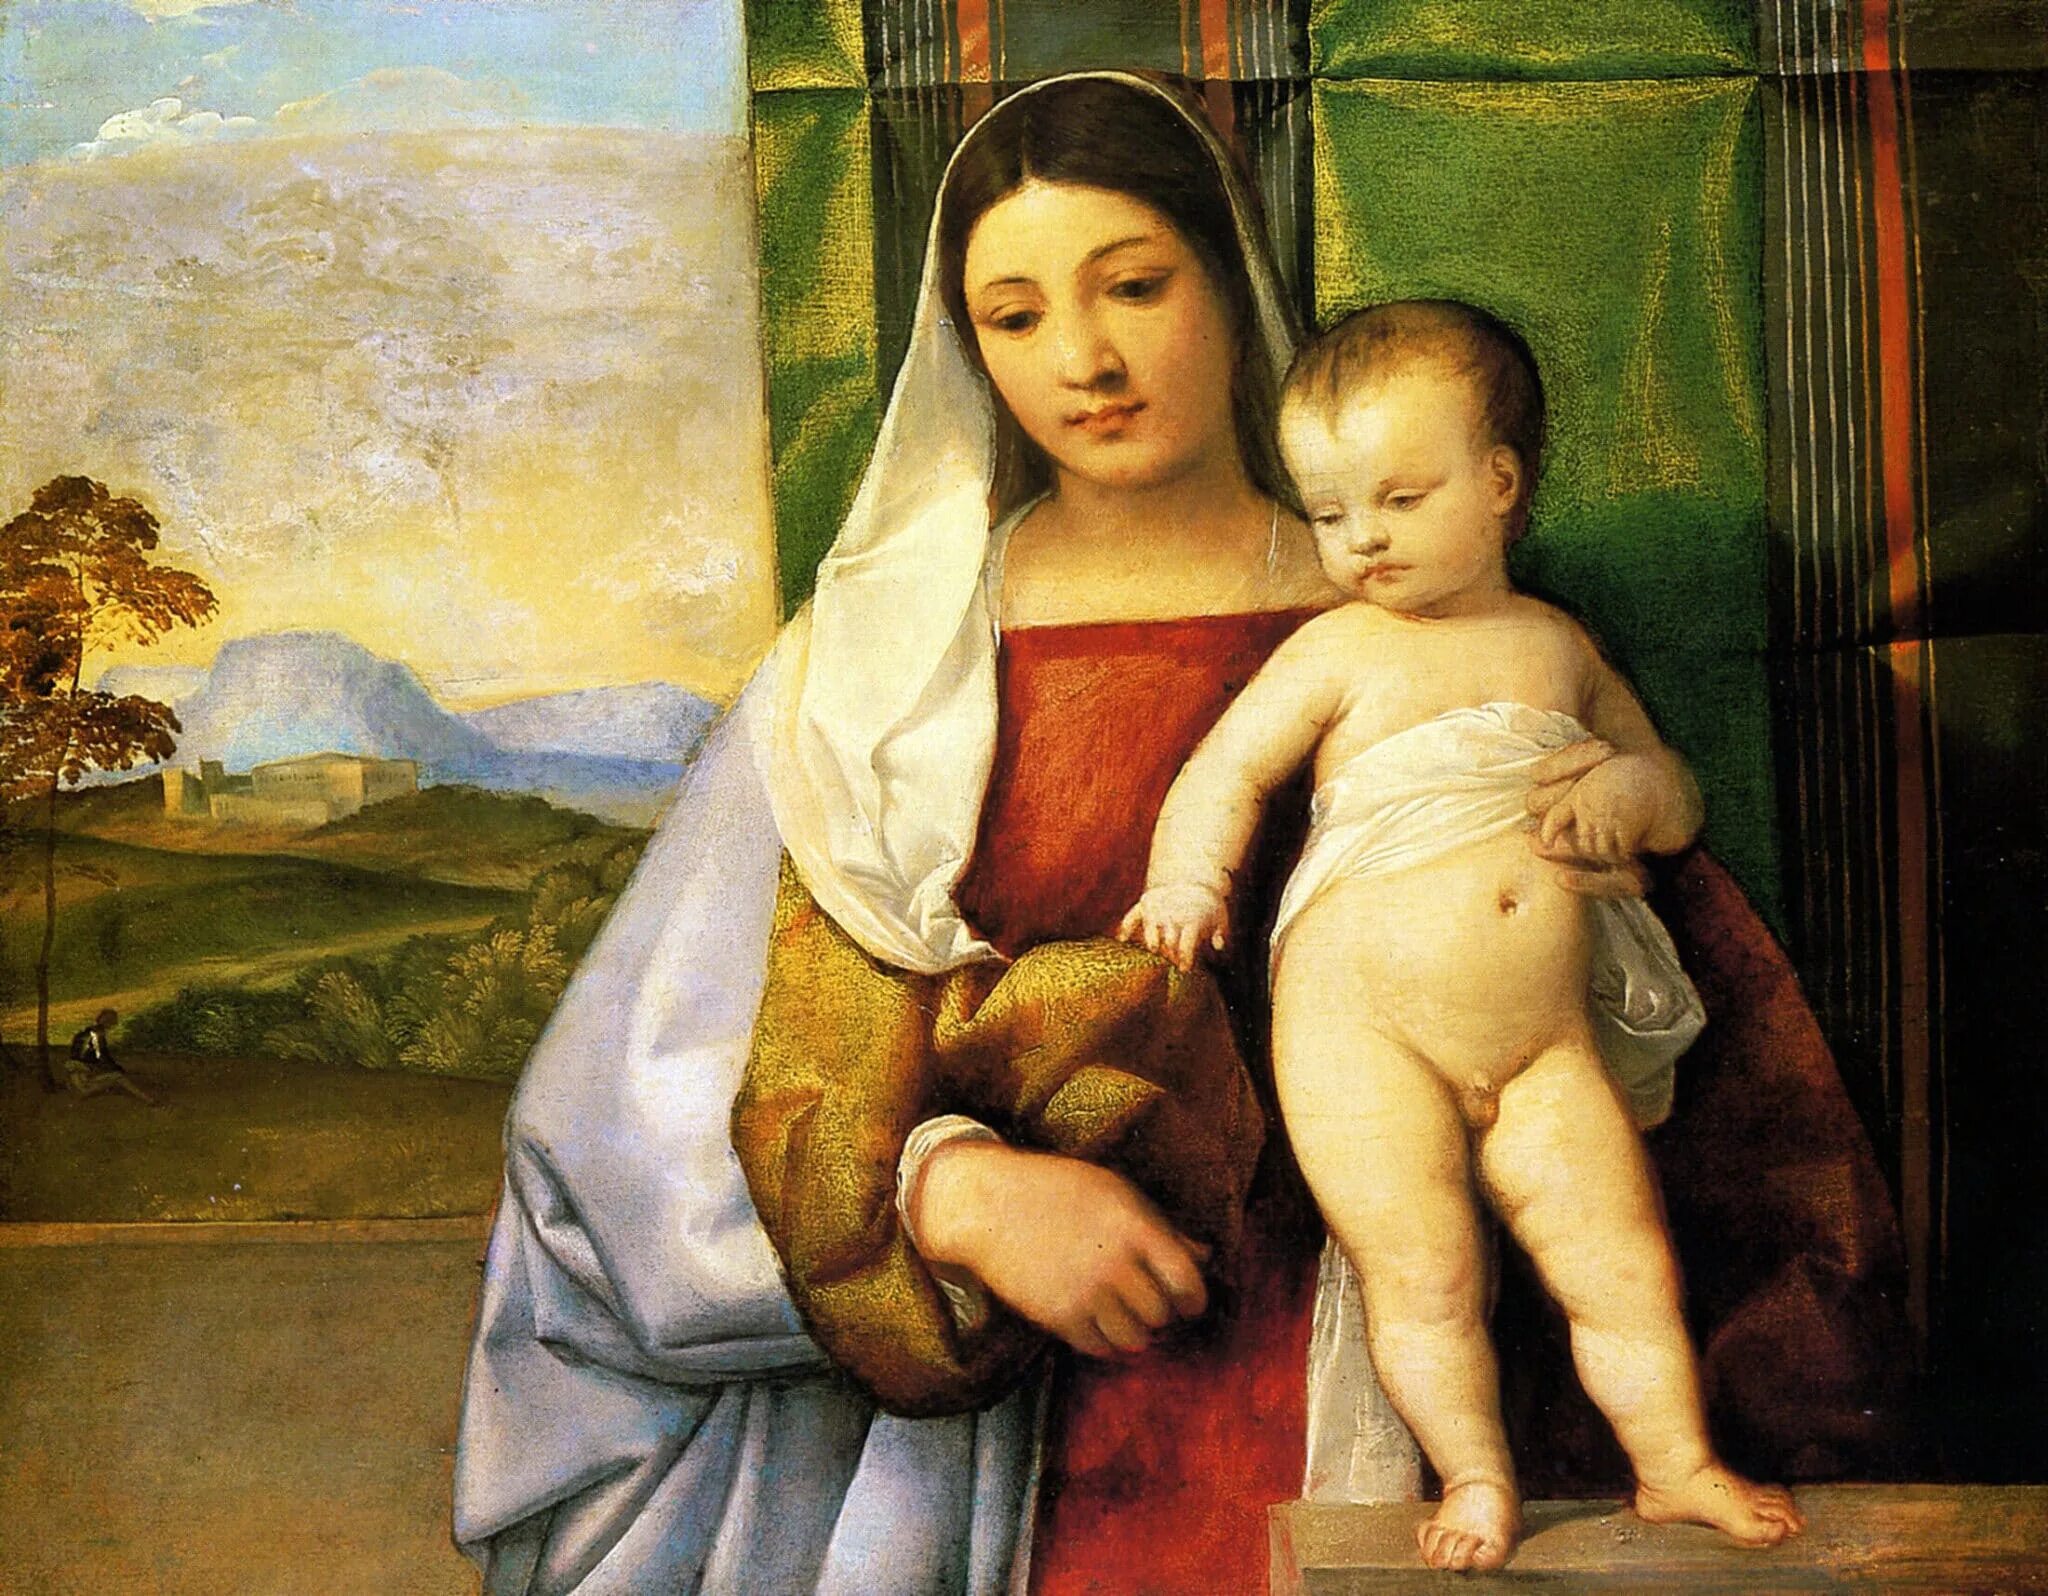 Тициан Вечеллио цыганская Мадонна. Тициан цыганская Мадонна картина. «Цыганская Мадонна» (1512);. Джованни Беллини Мадонна с младенцем. Любовь эпоху возрождения